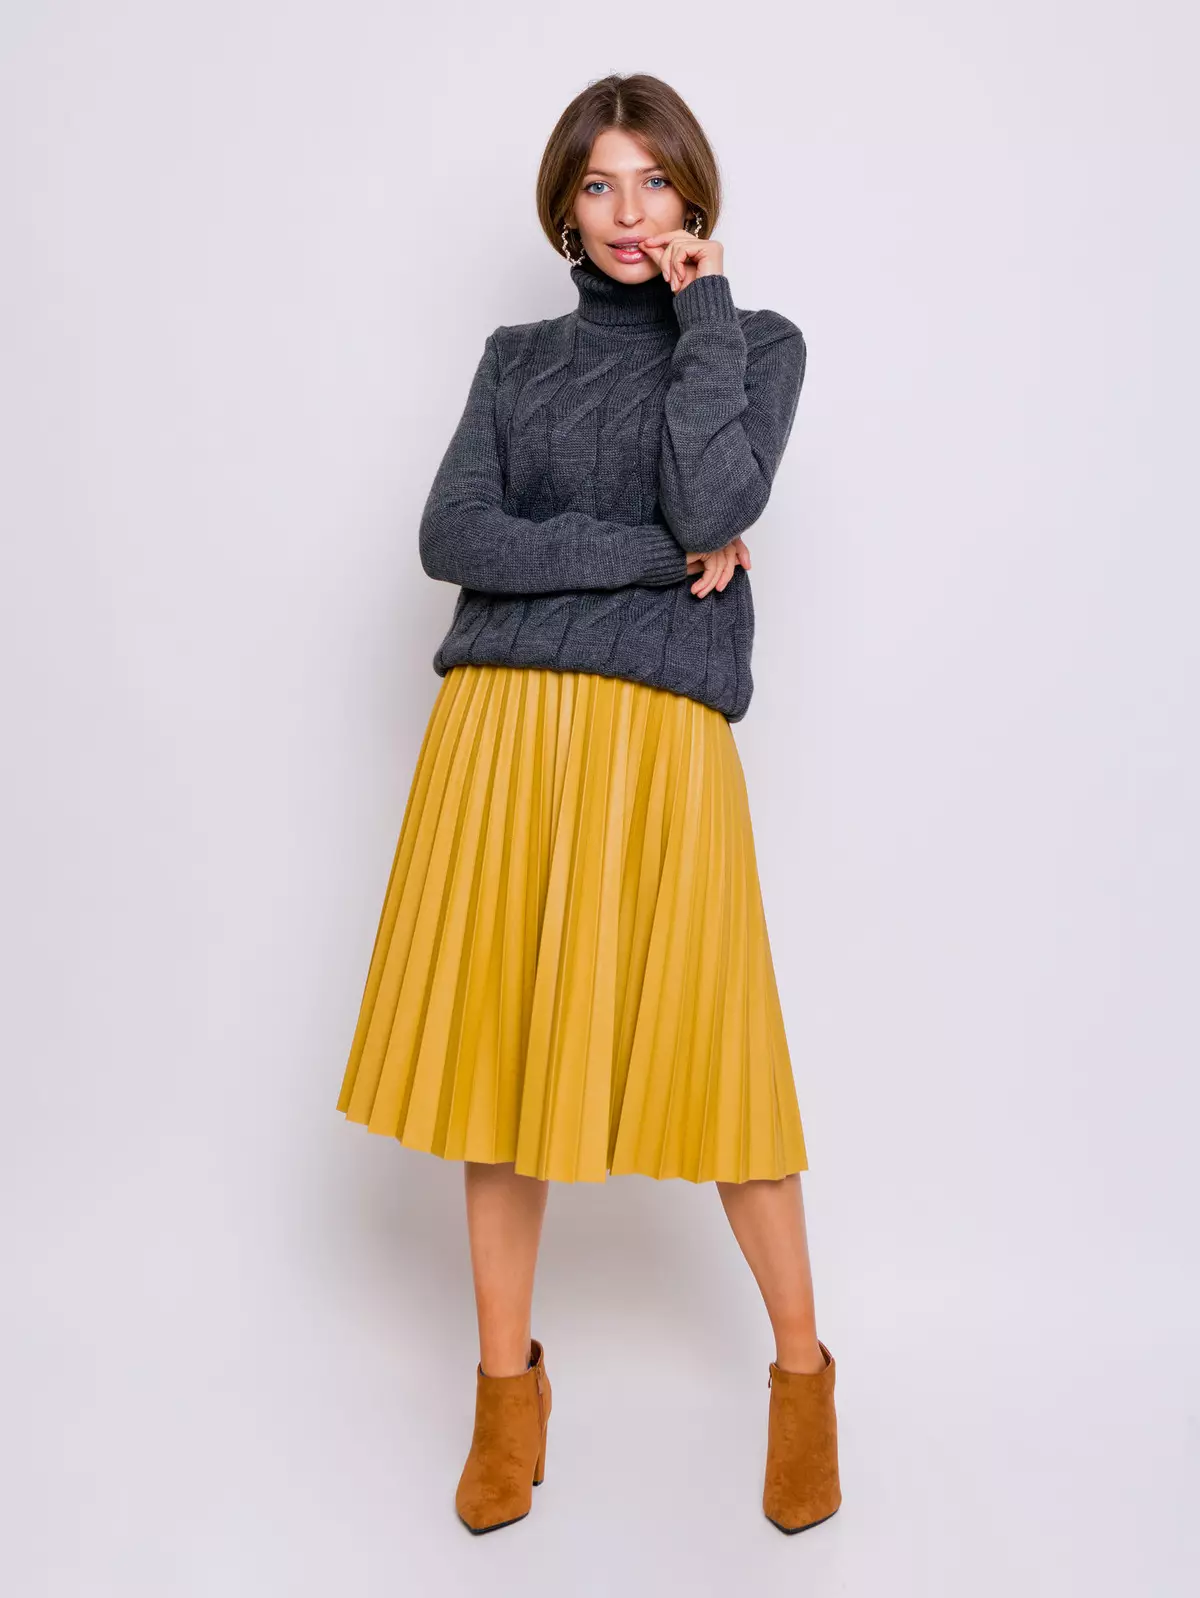 Placs Skirt Kulit: Apa yang perlu dipakai Rok Eco-Piece Pleated? Imej dengan skirt kulit tiruan hitam dan coklat 800_15